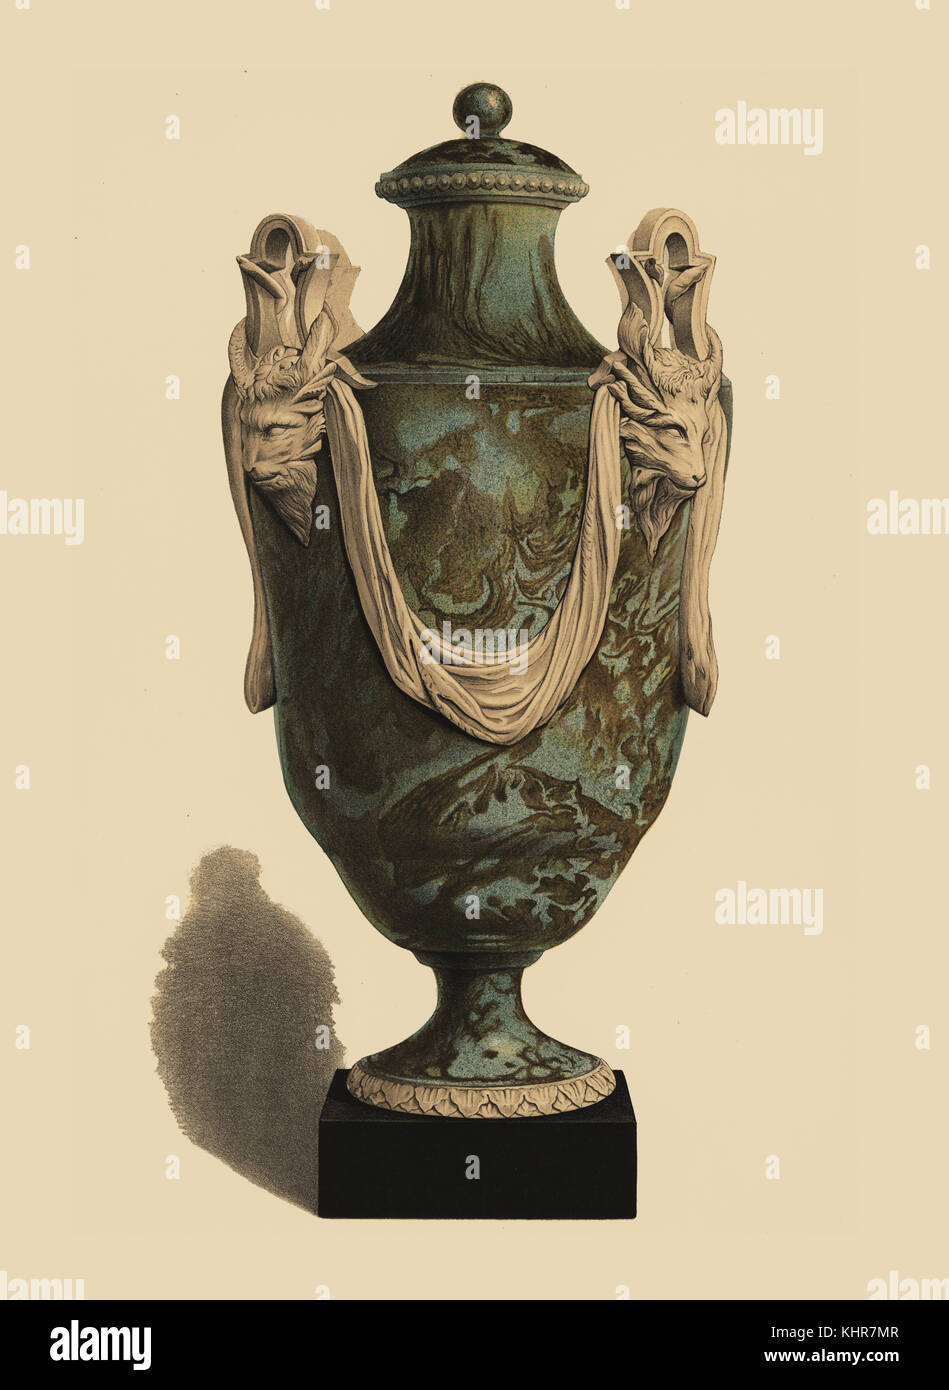 Große Vase in kristallinen Achat mit Tierköpfen gestaltet. Chromolithograph von W. Griggs von Friedrichs Rathbone alte Wedgwood, die dekorativen oder künstlerischen keramische Arbeiten von Josiah Wedgwood, Quaritch, London, 1898. Stockfoto